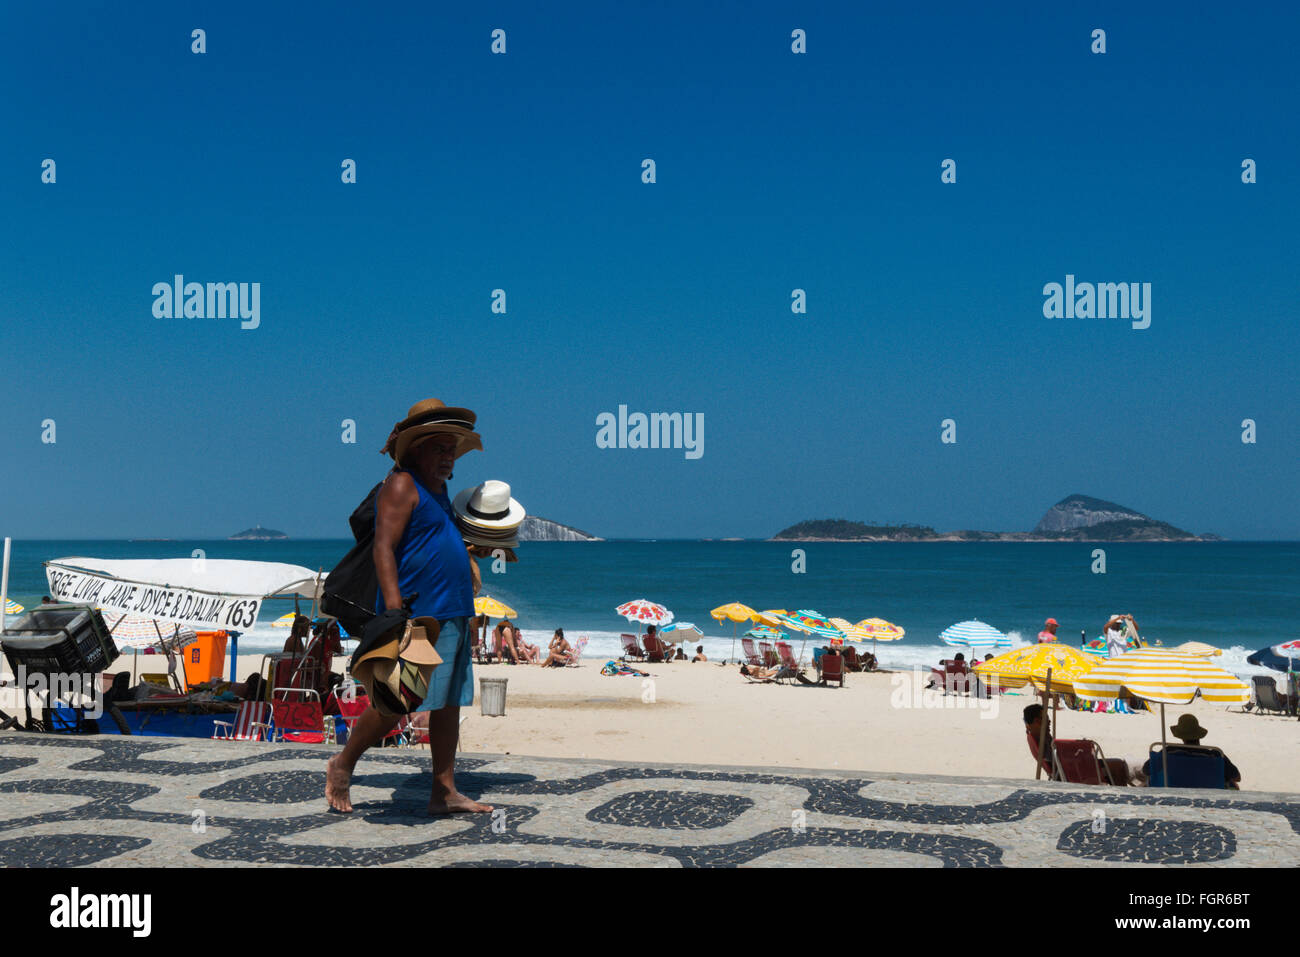 beach, Rio de Janeiro, Brazil Stock Photo